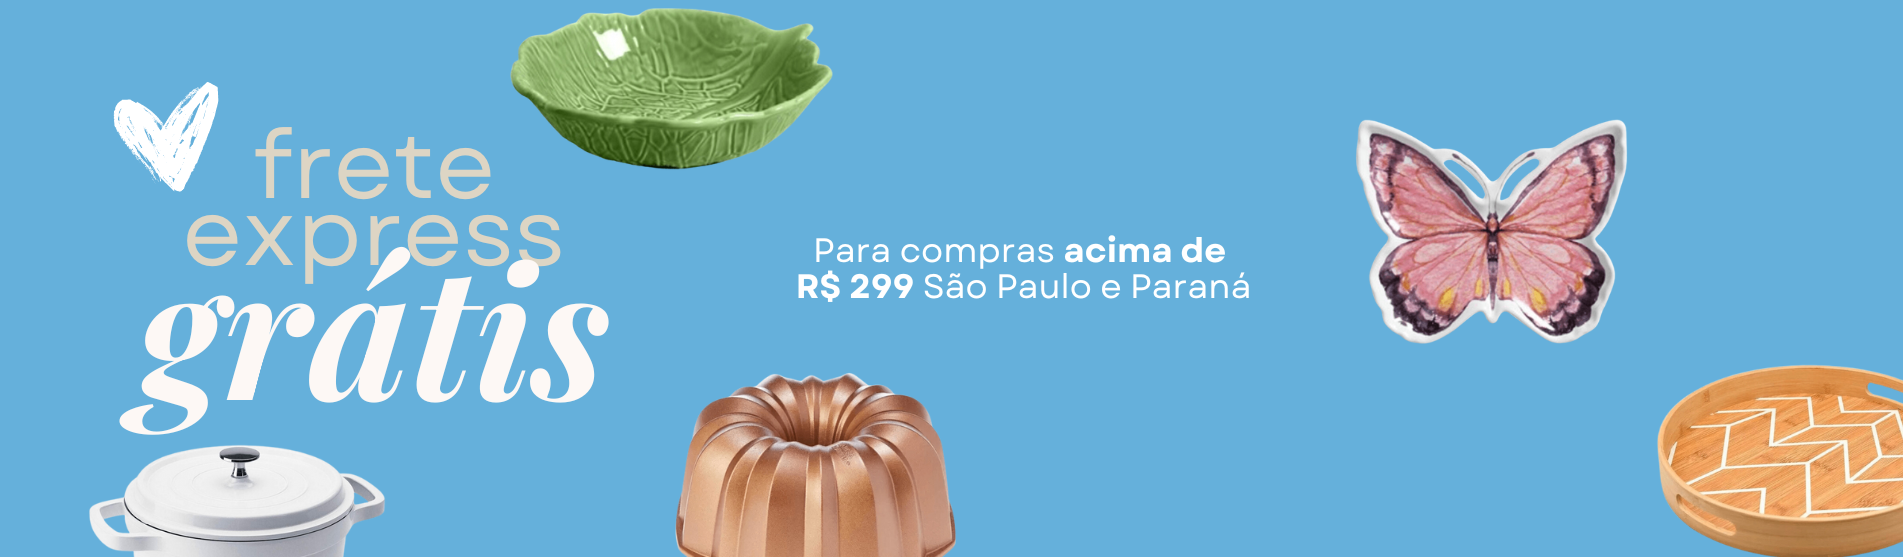 Frete Gratis para a região de São Paulo e Paraná